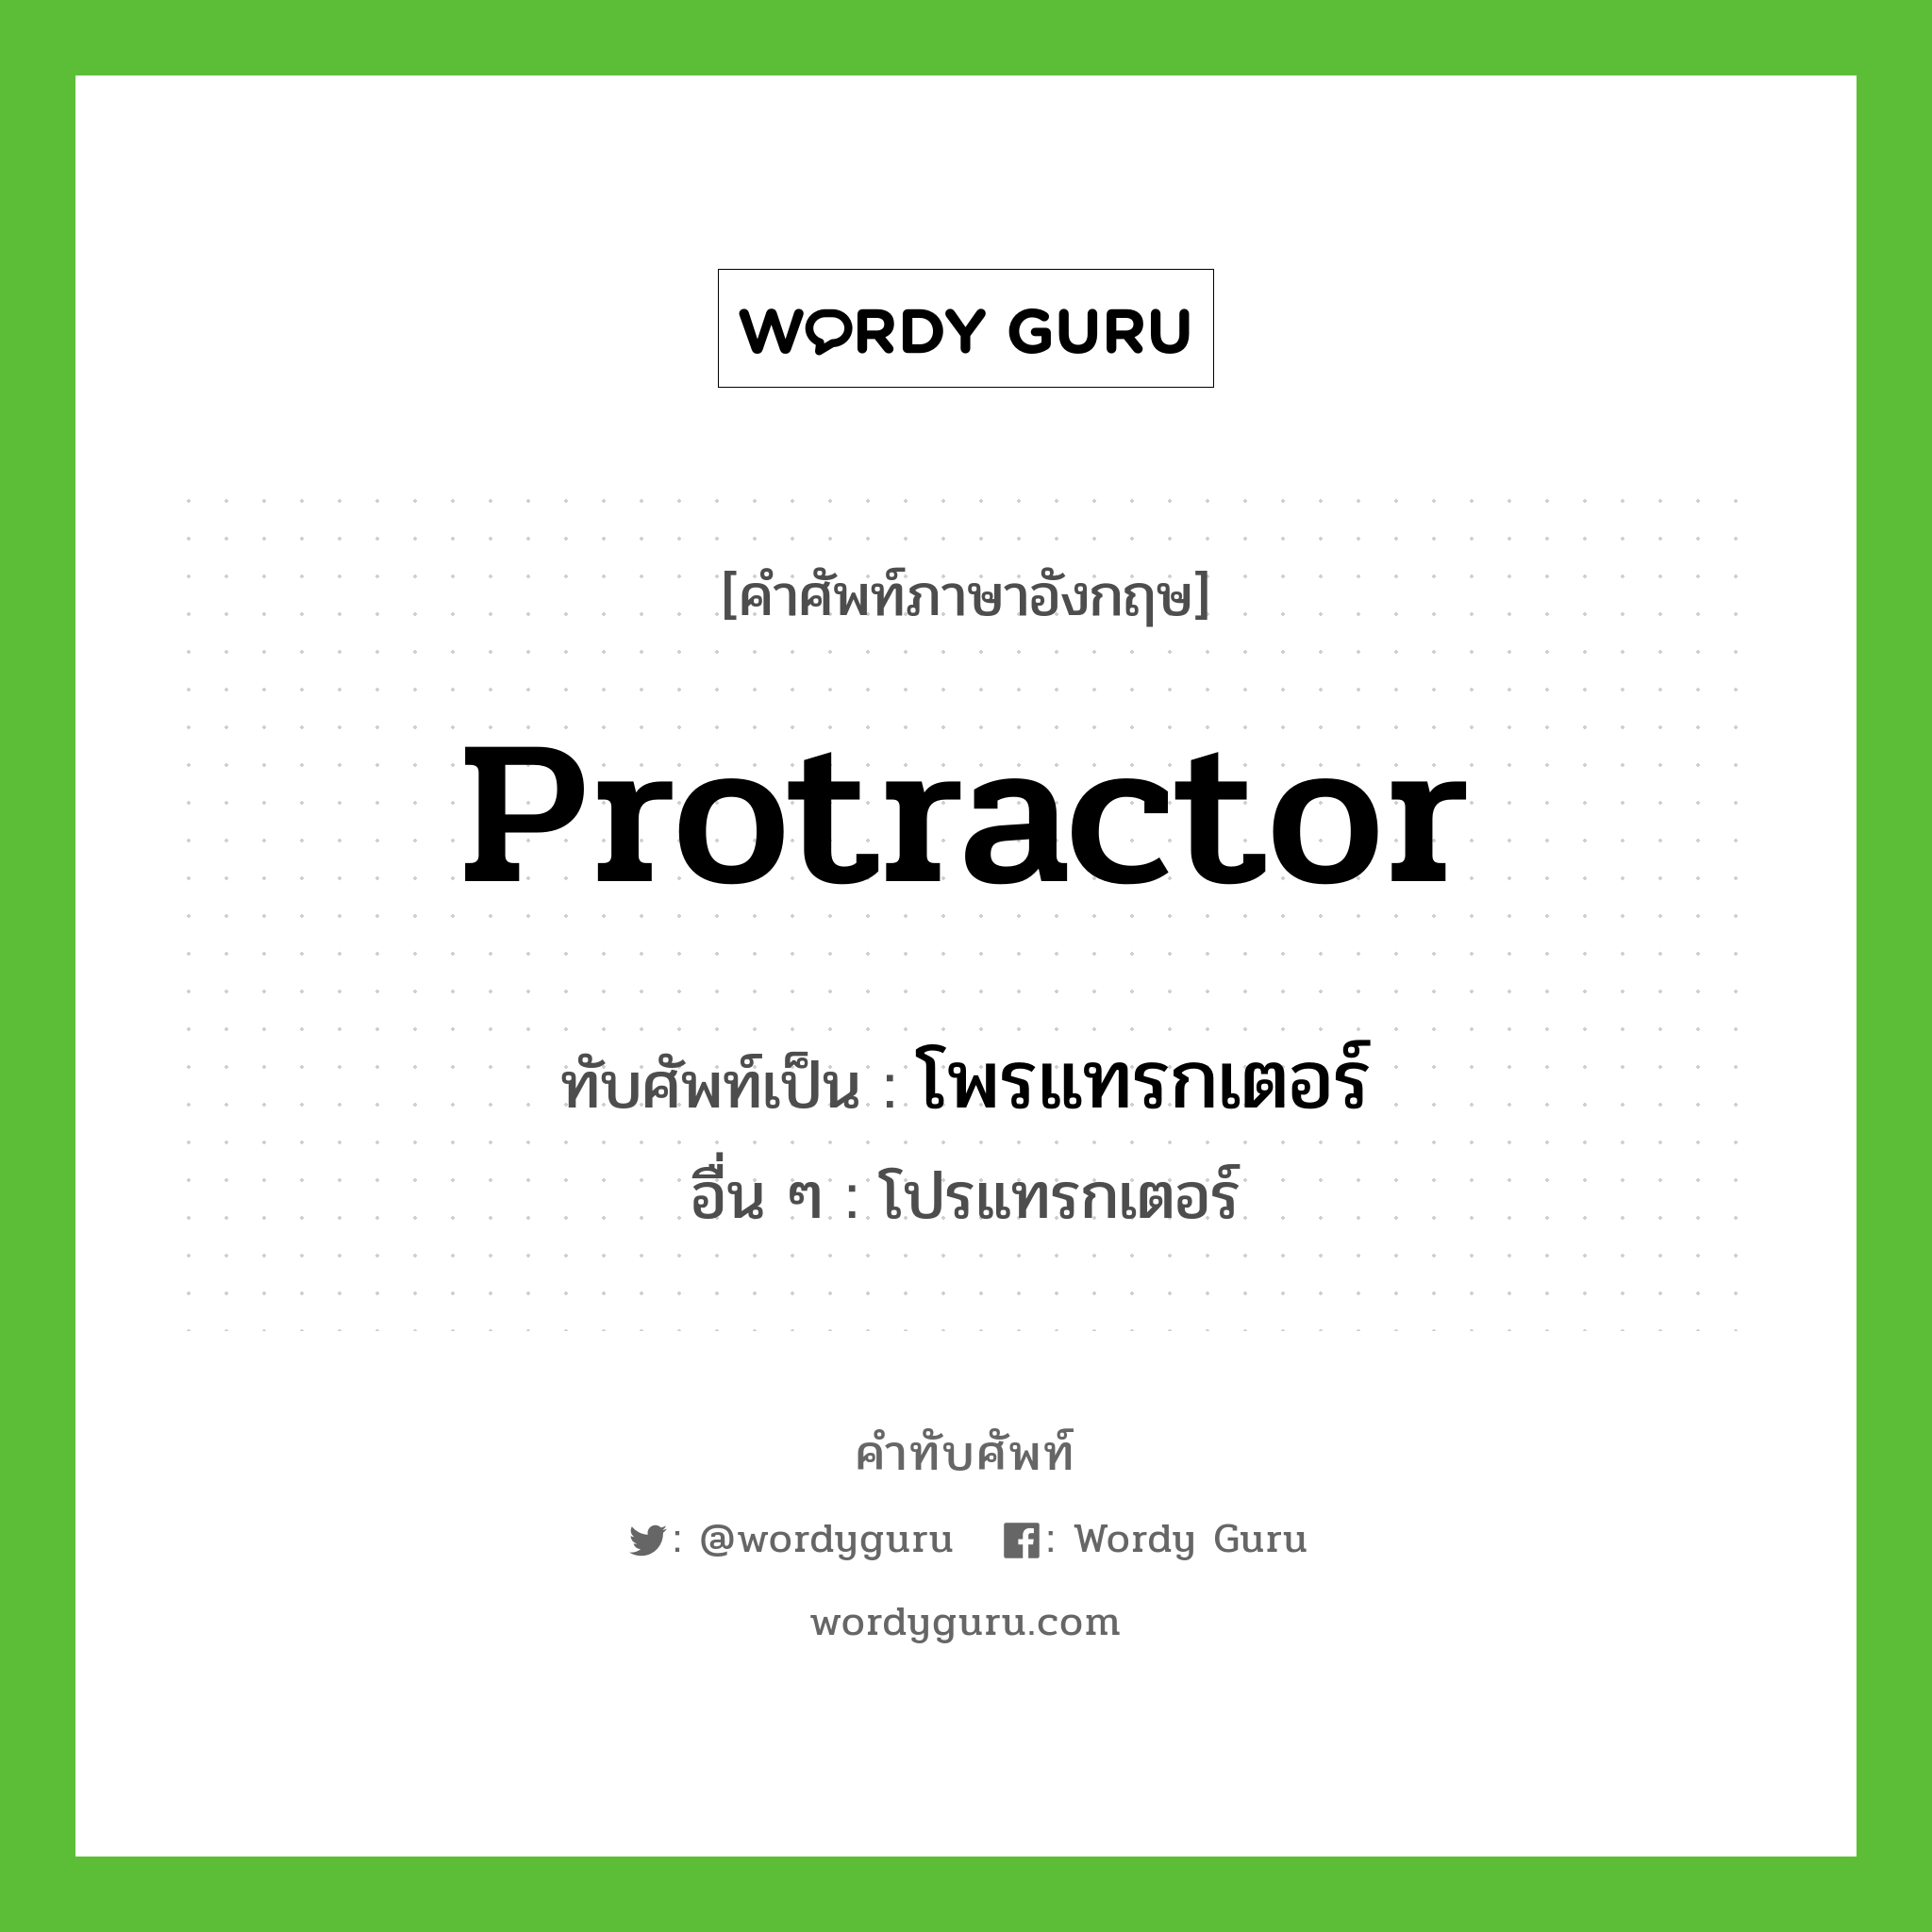 protractor เขียนเป็นคำไทยว่าอะไร?, คำศัพท์ภาษาอังกฤษ protractor ทับศัพท์เป็น โพรแทรกเตอร์ อื่น ๆ โปรแทรกเตอร์